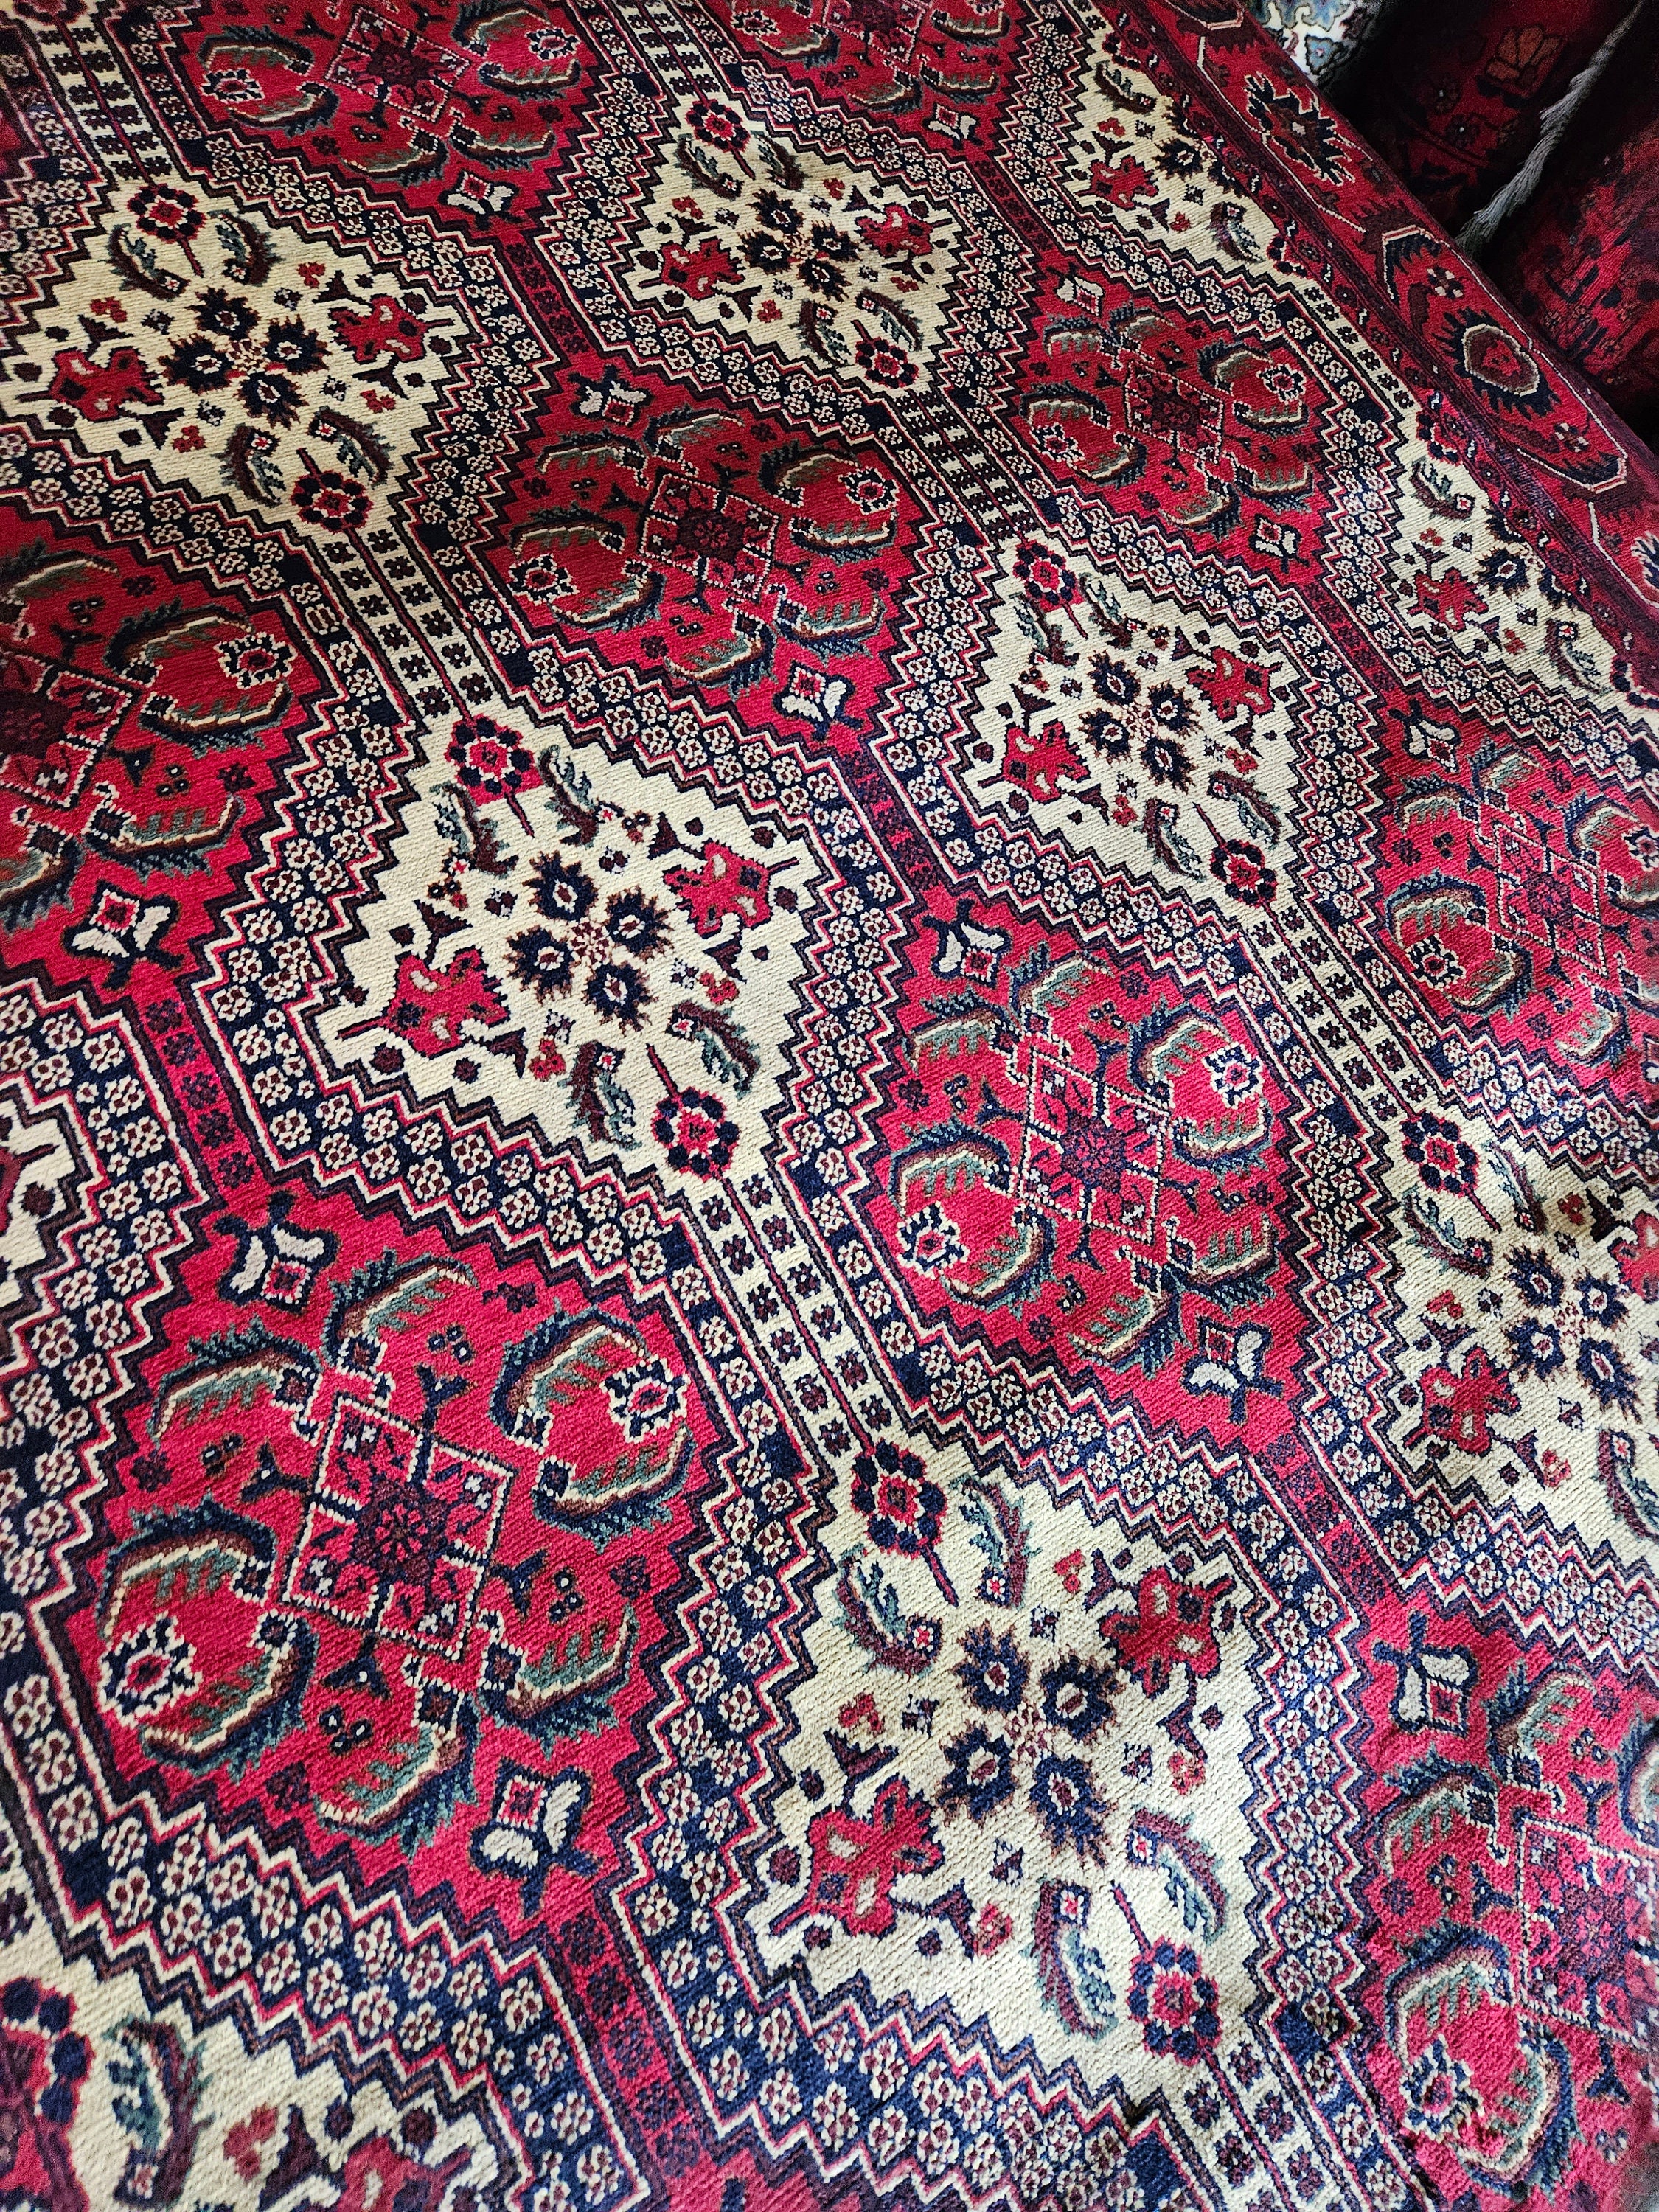 10x7 afghan Kargahi carpet rug persian rugs oriental rugs handmade baluch rug persian rug moroccan rug weaving rucarpet afghan